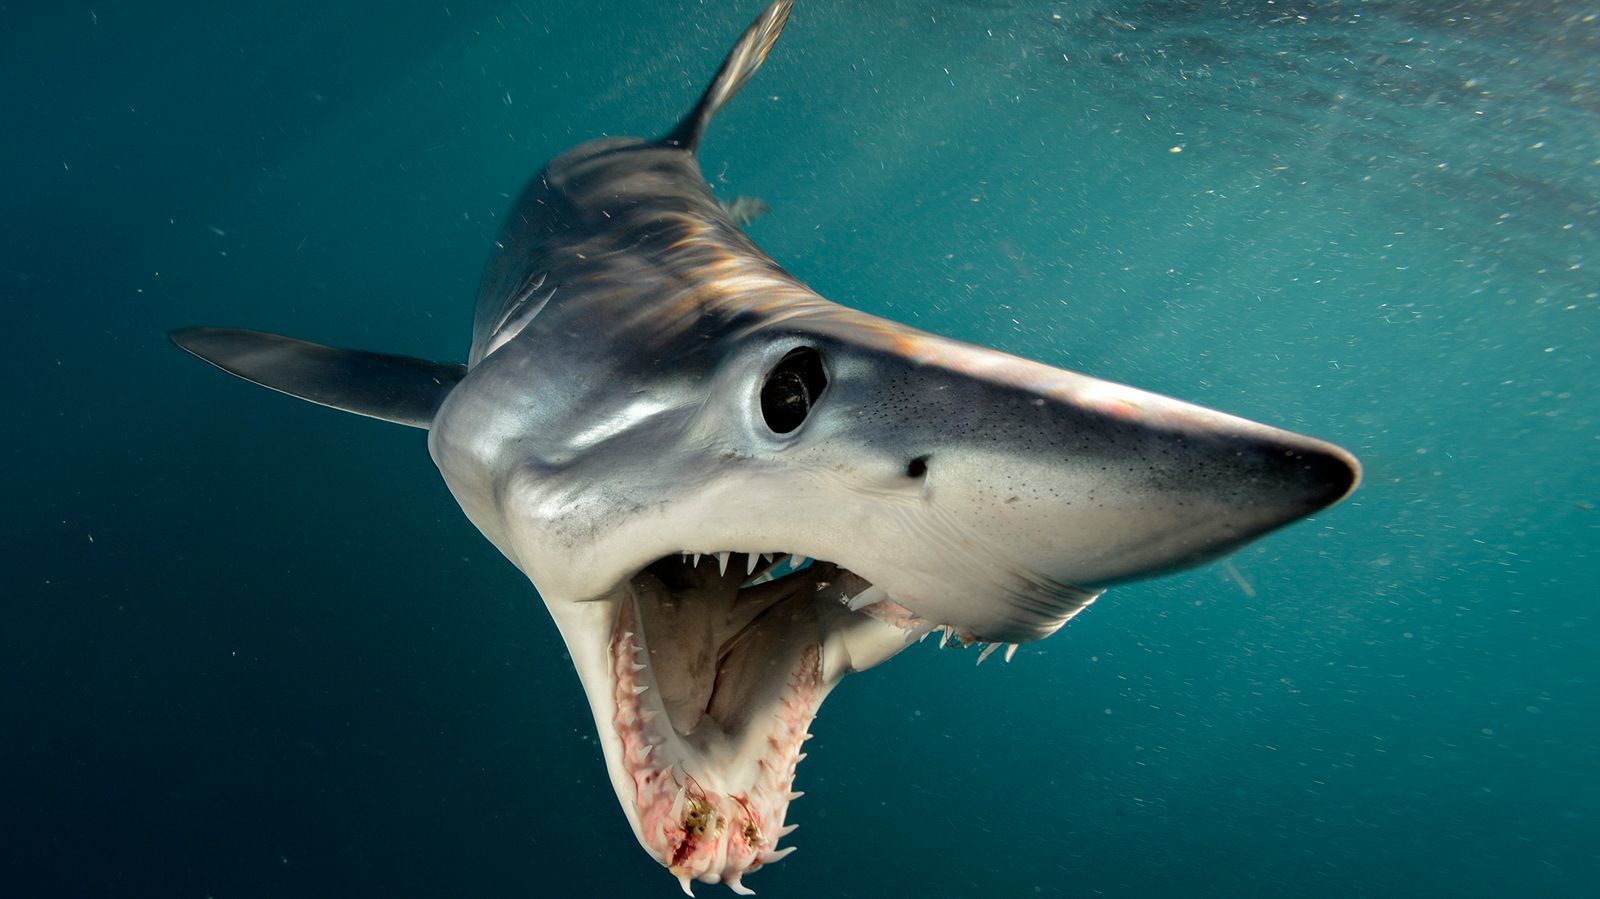 马尔代夫Fuvahmulah岛——虎鲨潜水全攻略（整理后转贴） - 知乎